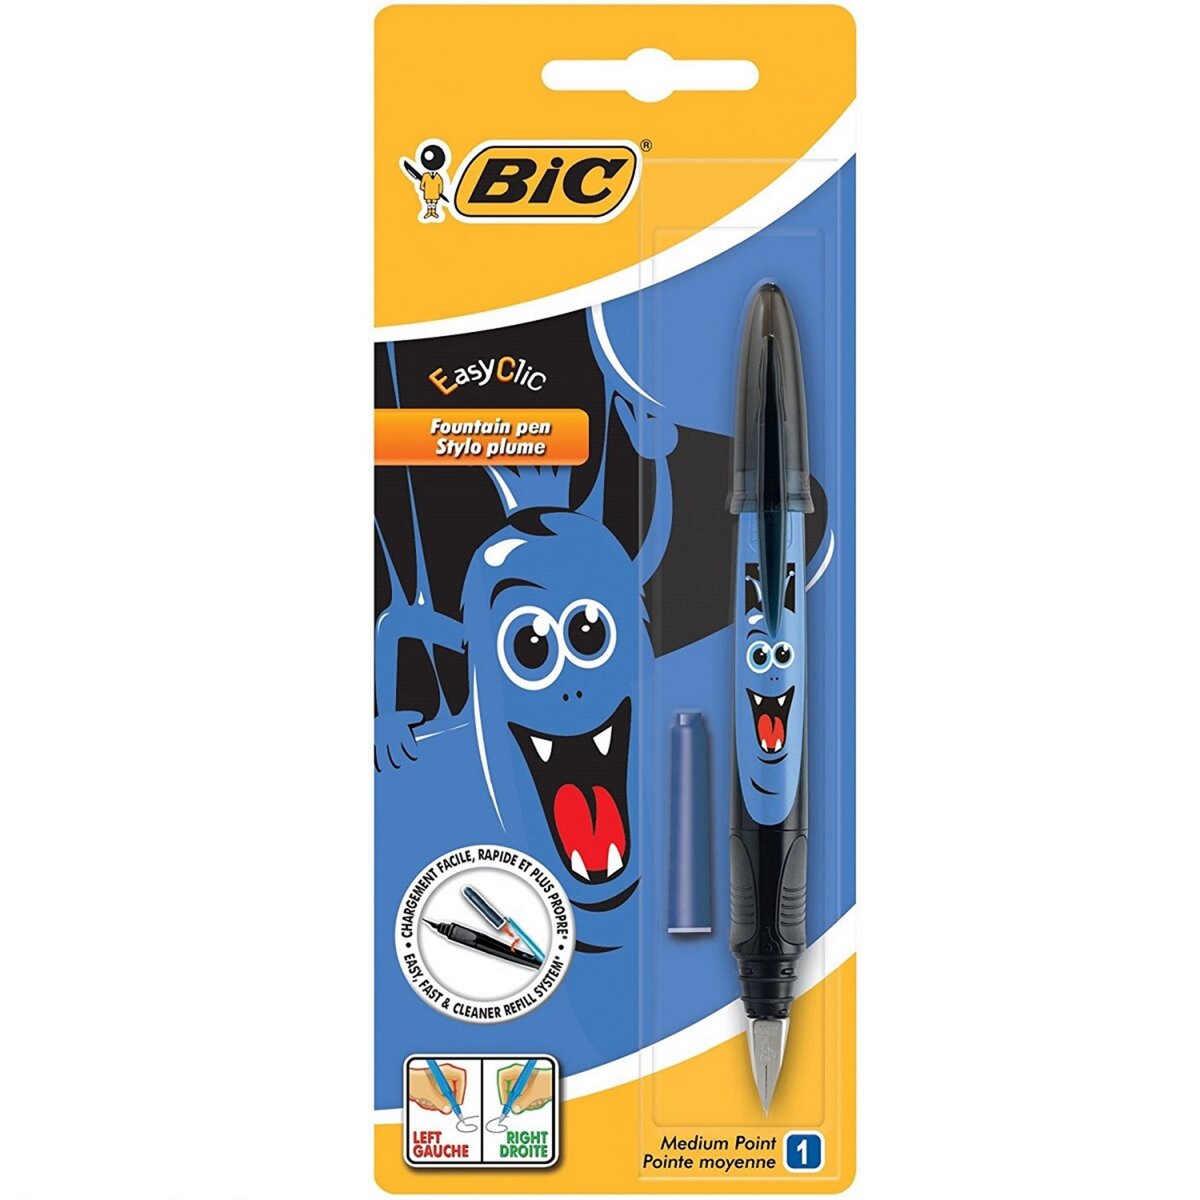 BIC Stylo-plume rechargeable + 1 petite cartouche d'encre bleu EASYCLIC